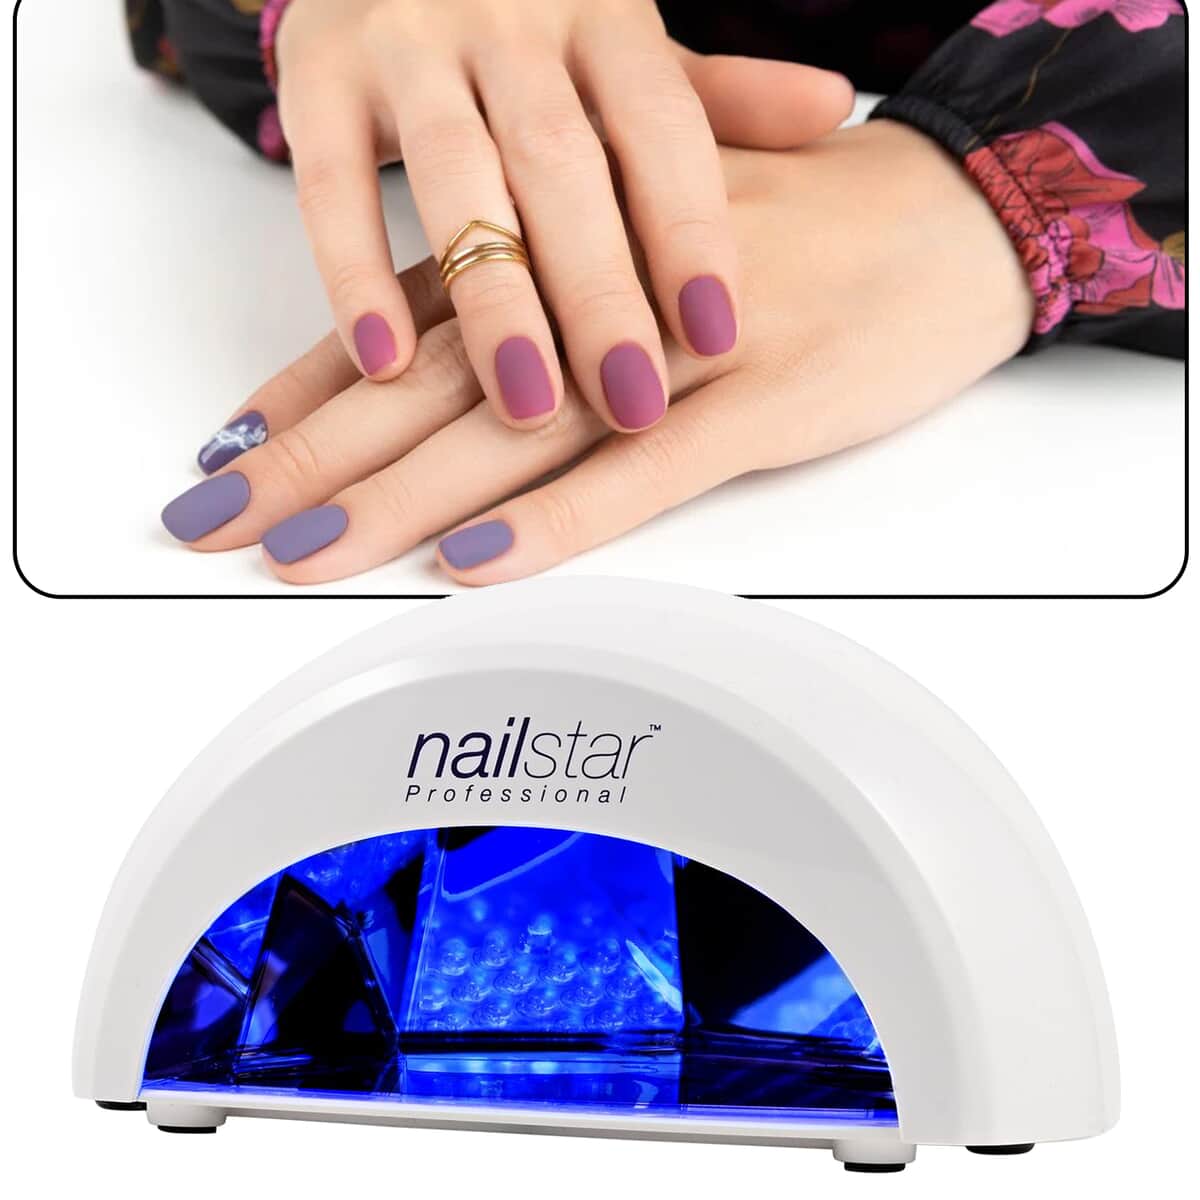 NailStar Professional LED Nail Lamp image number 1